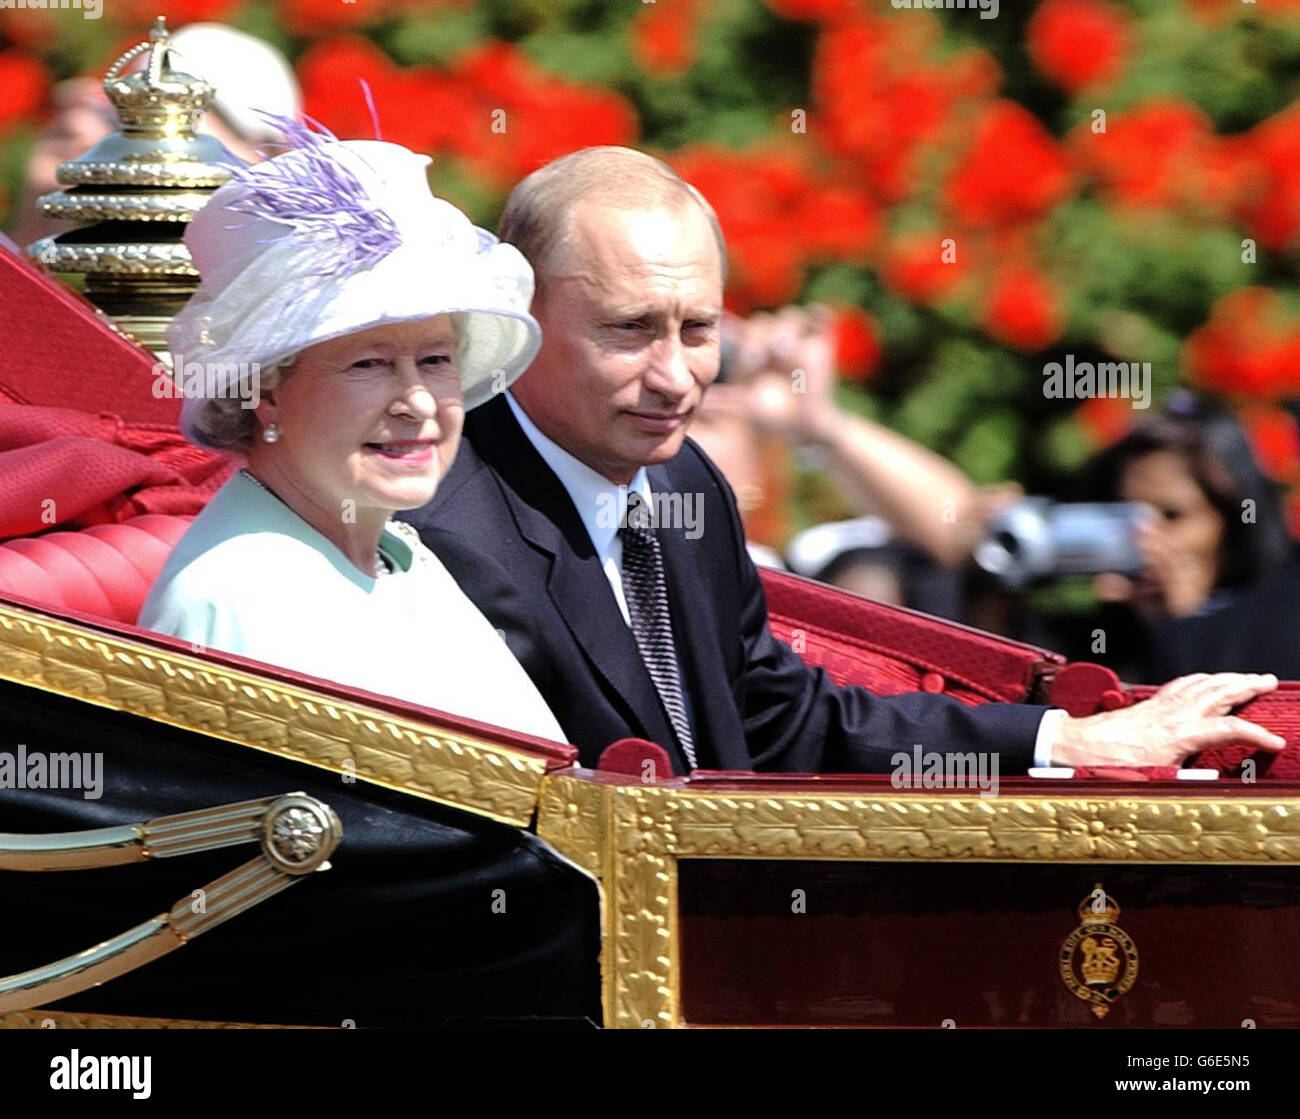 La Regina Elisabetta II della Gran Bretagna e il presidente russo Vladimir Putin arrivano a Buckingham Palace, Londra, il primo giorno della sua visita di stato. E' la prima visita di stato di un leader russo dai tempi degli zar. Foto Stock